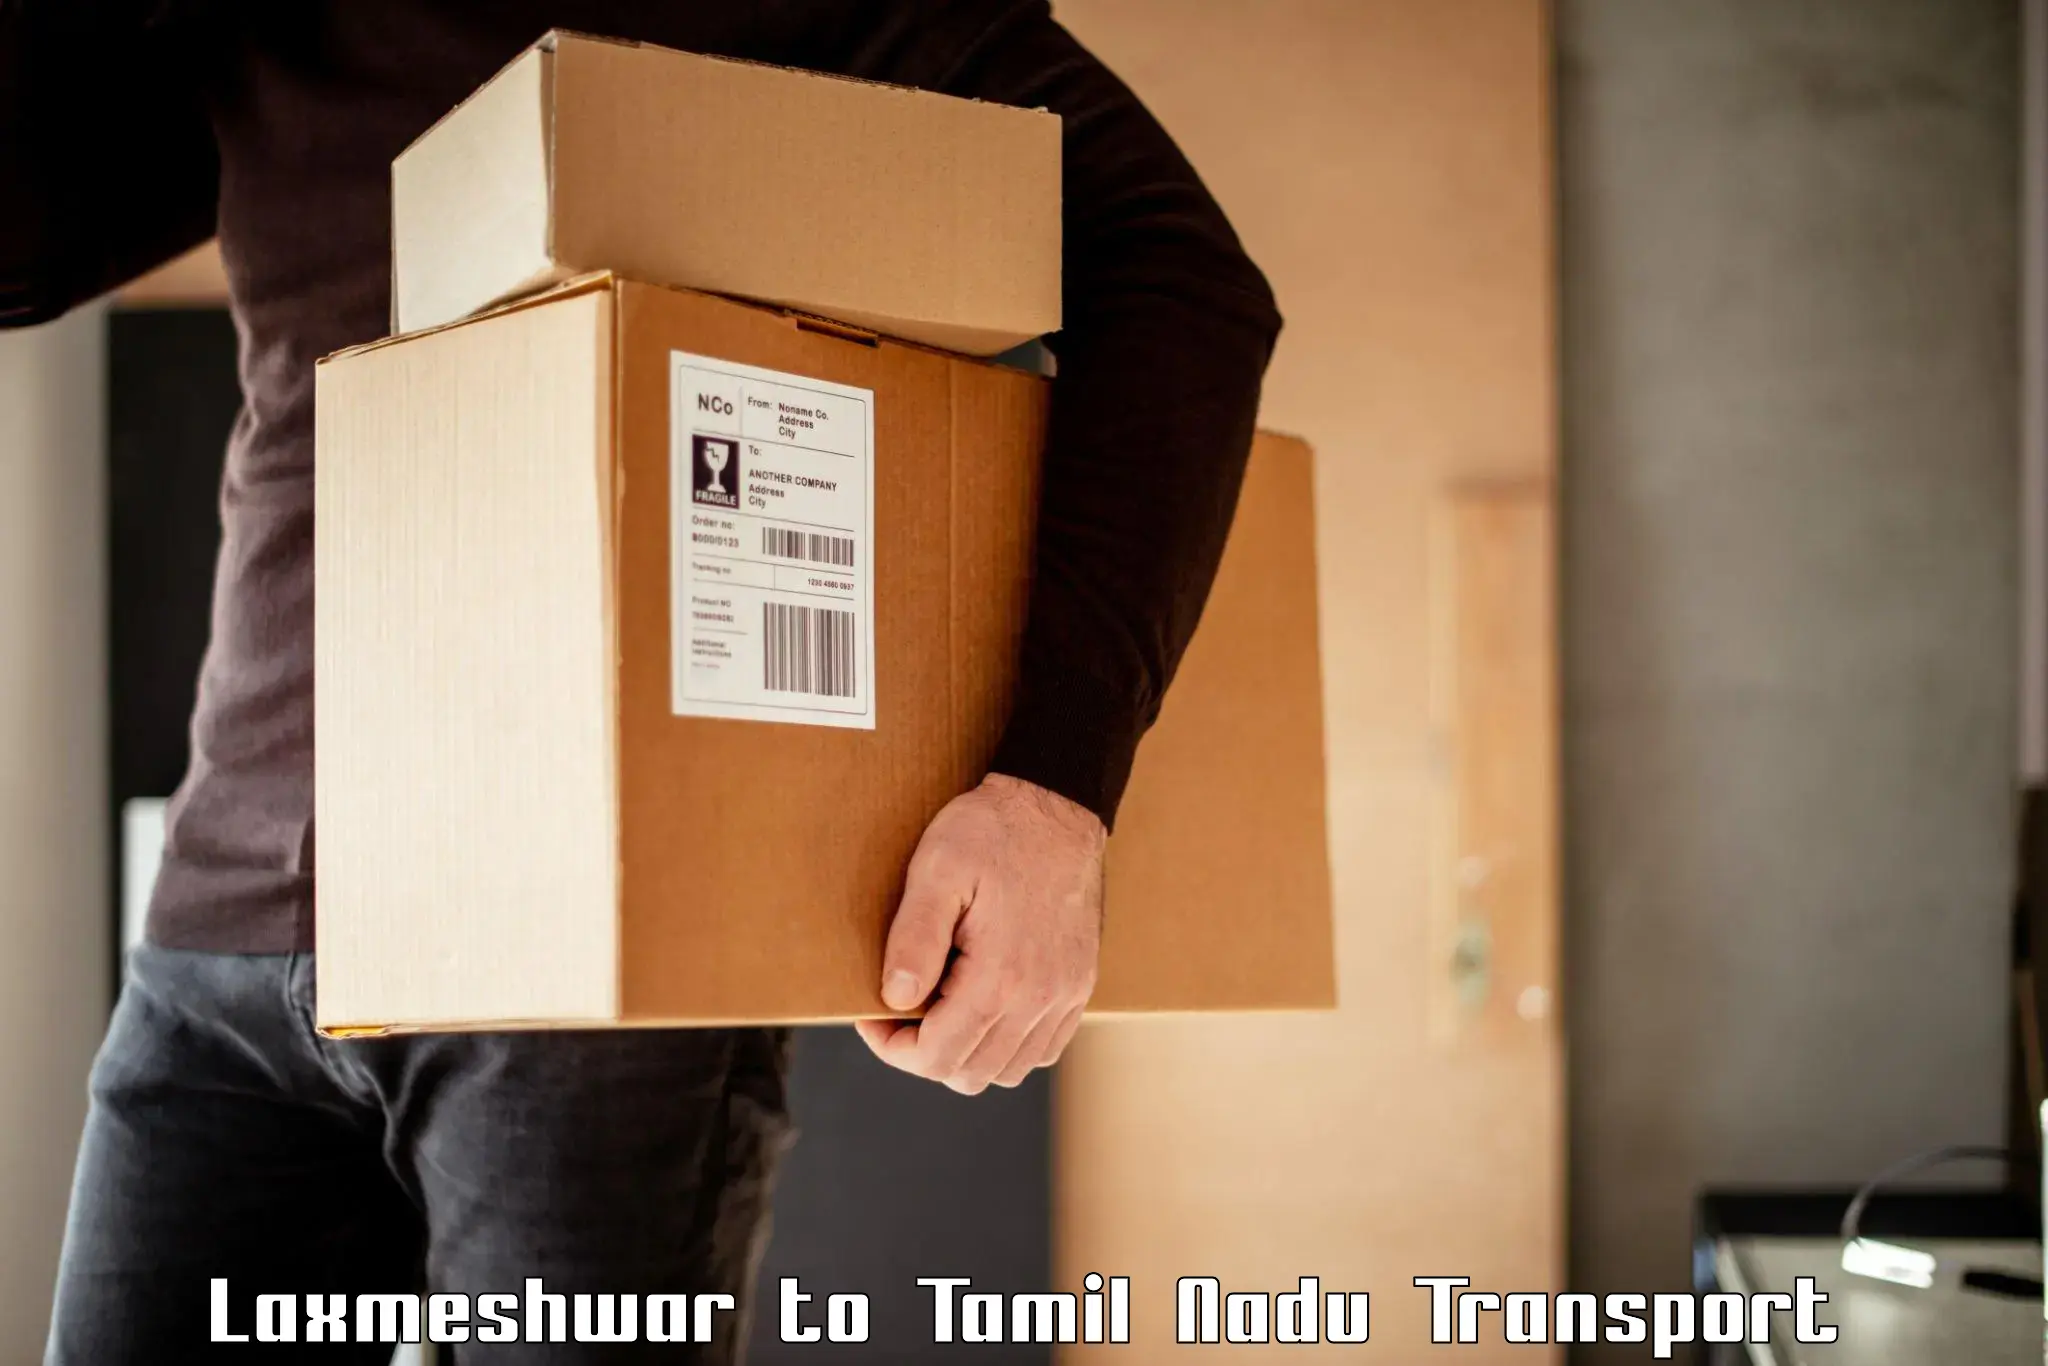 Luggage transport services Laxmeshwar to Paramakudi